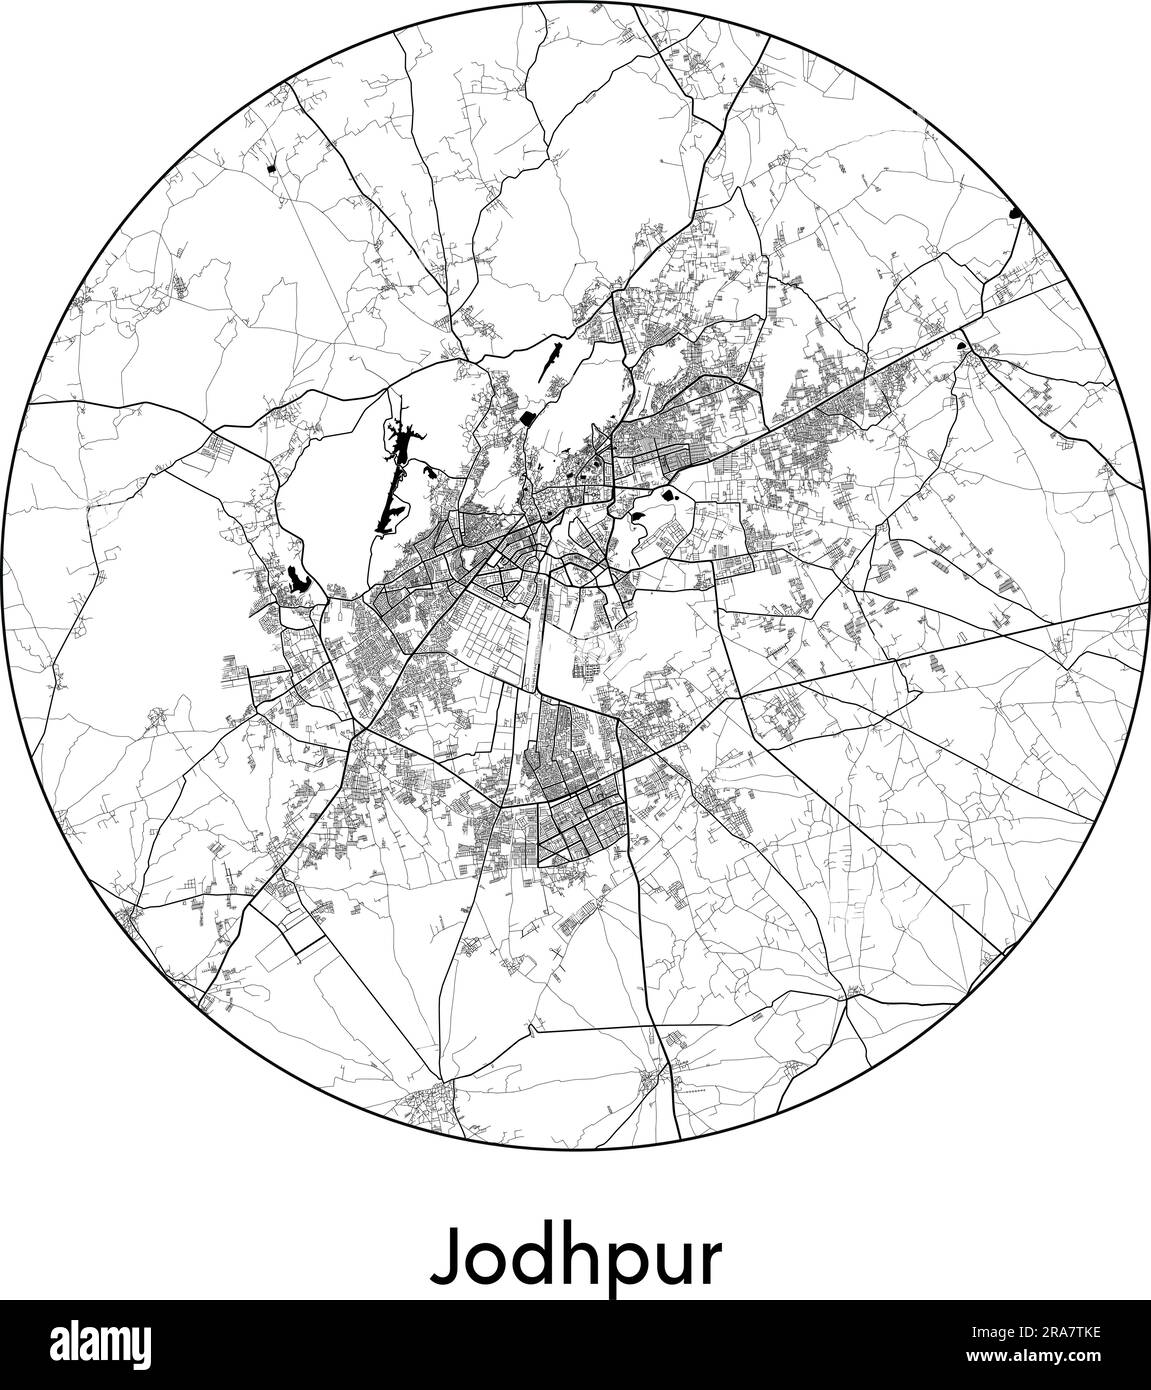 Stadtplan Jodhpur Indien Asien Vektordarstellung schwarz weiß Stock Vektor